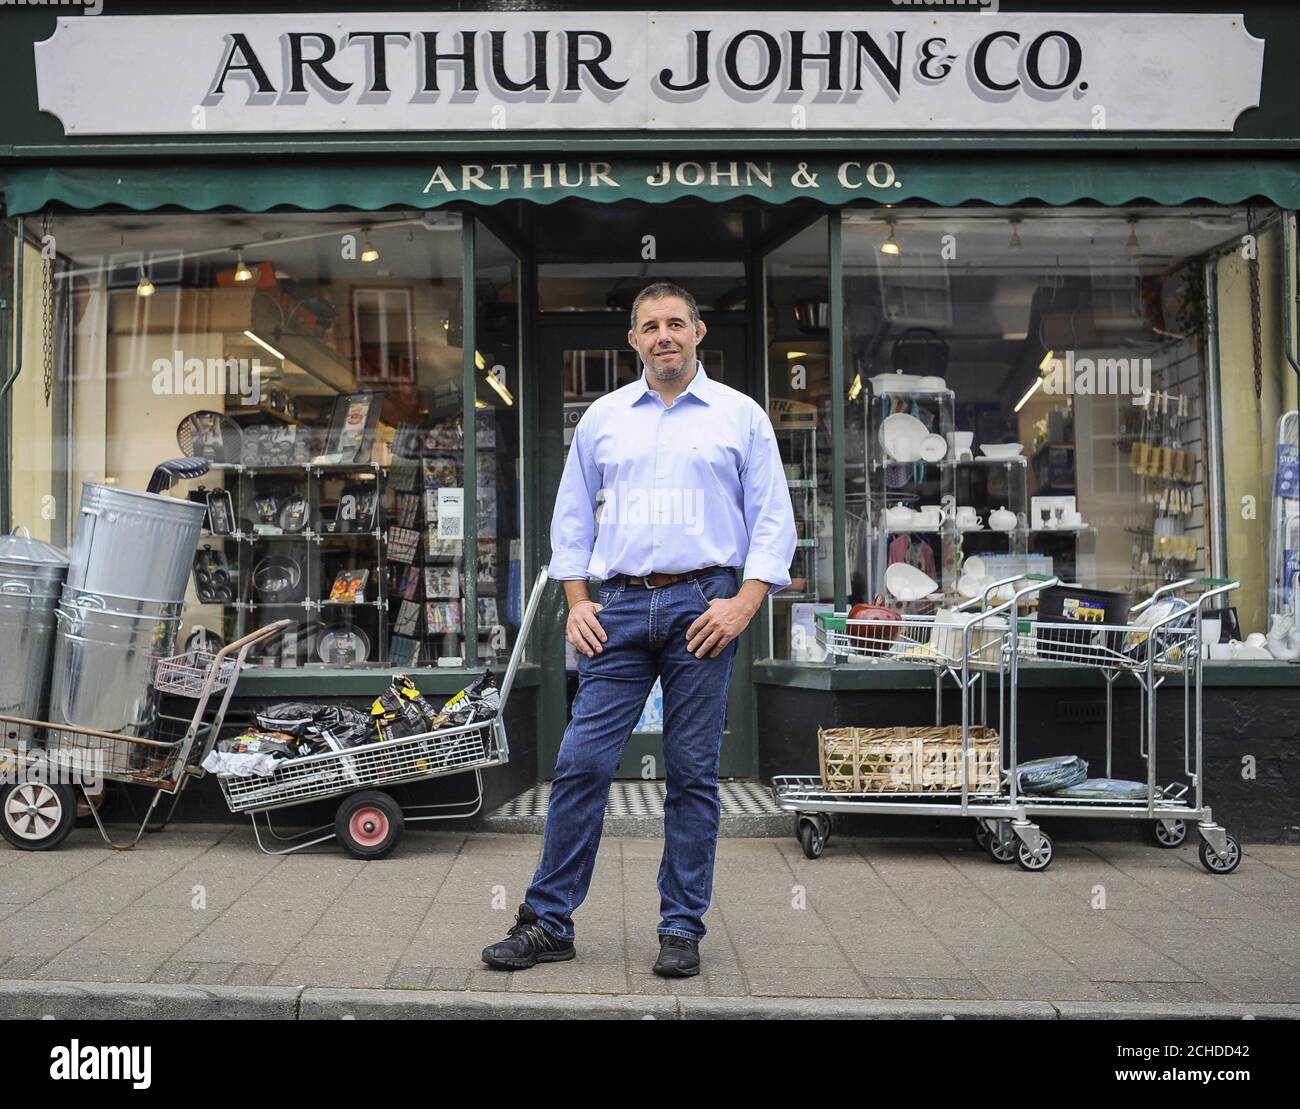 Alun John rappresenta Arthur John & Co per Cowbridge High Street, una delle 38 strade secondarie del Great British High Street Awards 2018, sponsorizzata da Visa e gestita dal Ministero degli alloggi, delle Comunità e del Governo locale. Foto Stock